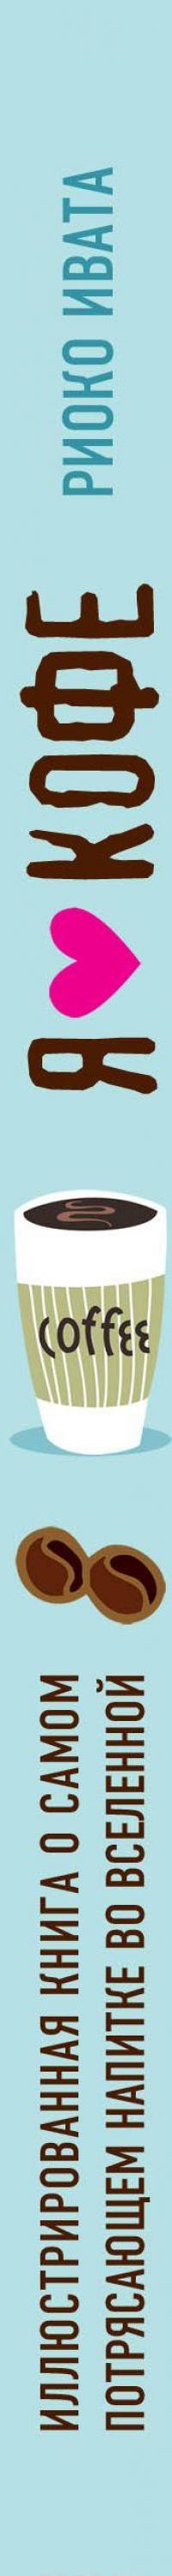 Я люблю кофе! Иллюстрированная книга о самом потрясающем напитке во Вселенной